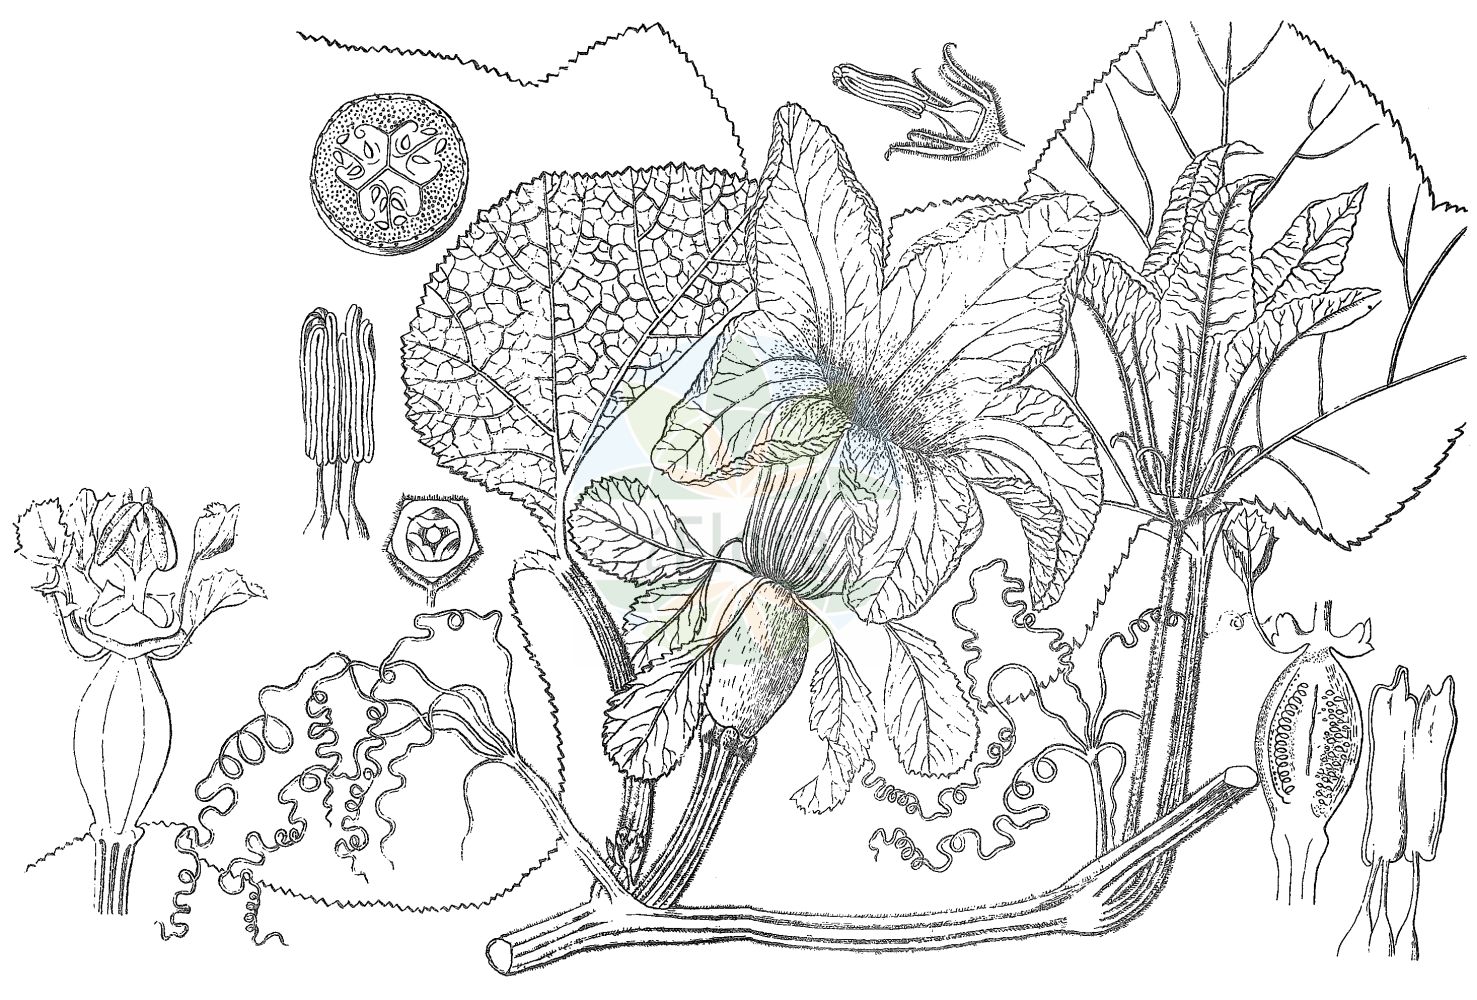 Historische Abbildung von Cucurbita maxima (Pumpkin). Das Bild zeigt Blatt, Bluete, Frucht und Same. ---- Historical Drawing of Cucurbita maxima (Pumpkin). The image is showing leaf, flower, fruit and seed.(Cucurbita maxima,Pumpkin,Cucurbita maxima,Cucurbita pileiformis,Cucurbita turbaniformis,Cucurbita,Cucurbitaceae,Kürbisgewächse,Cucurbit family,Blatt,Bluete,Frucht,Same,leaf,flower,fruit,seed,Kirtikar & Basu (1918))